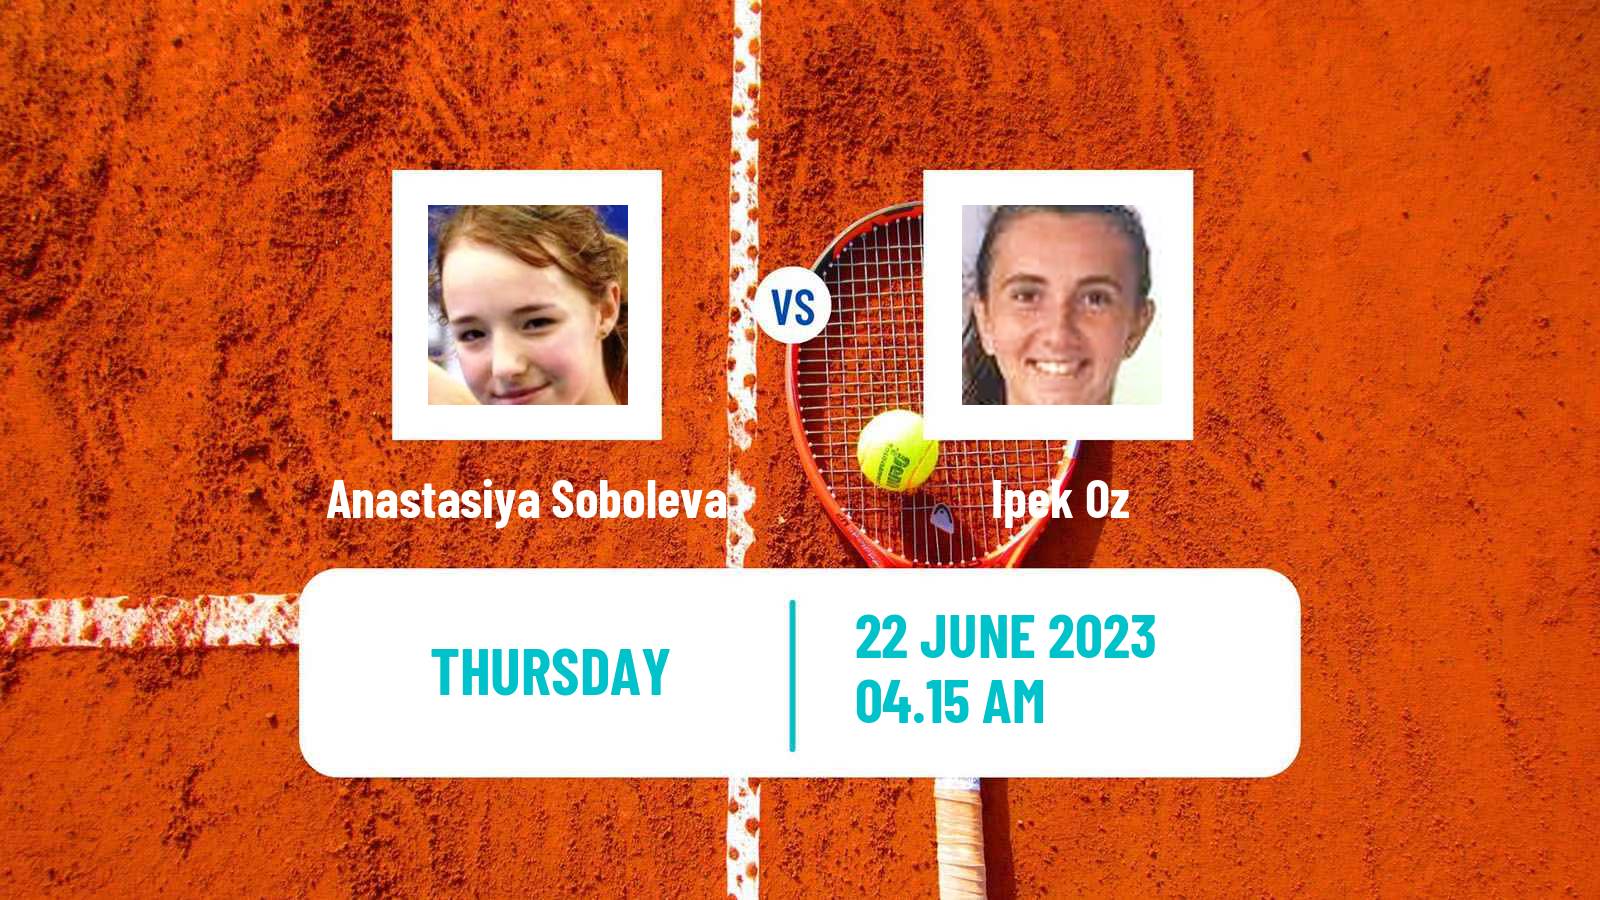 Tennis ITF W40 Ystad Women Anastasiya Soboleva - Ipek Oz